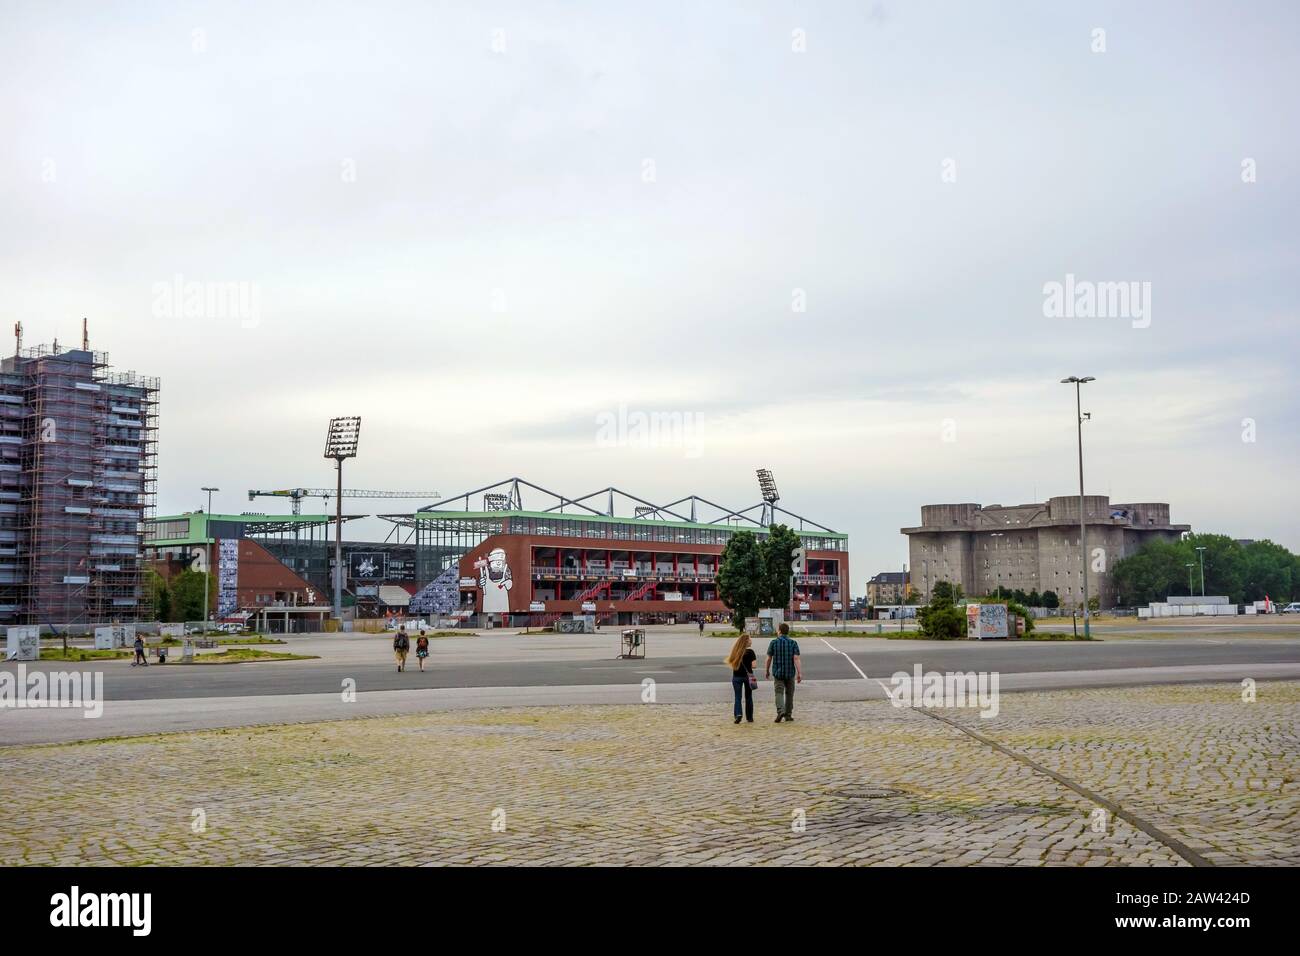 Hamburg, 7. Juni 2014: Stadion Millerntor, Fußballarena des Bundesligisten FC St. Pauli. Stockfoto